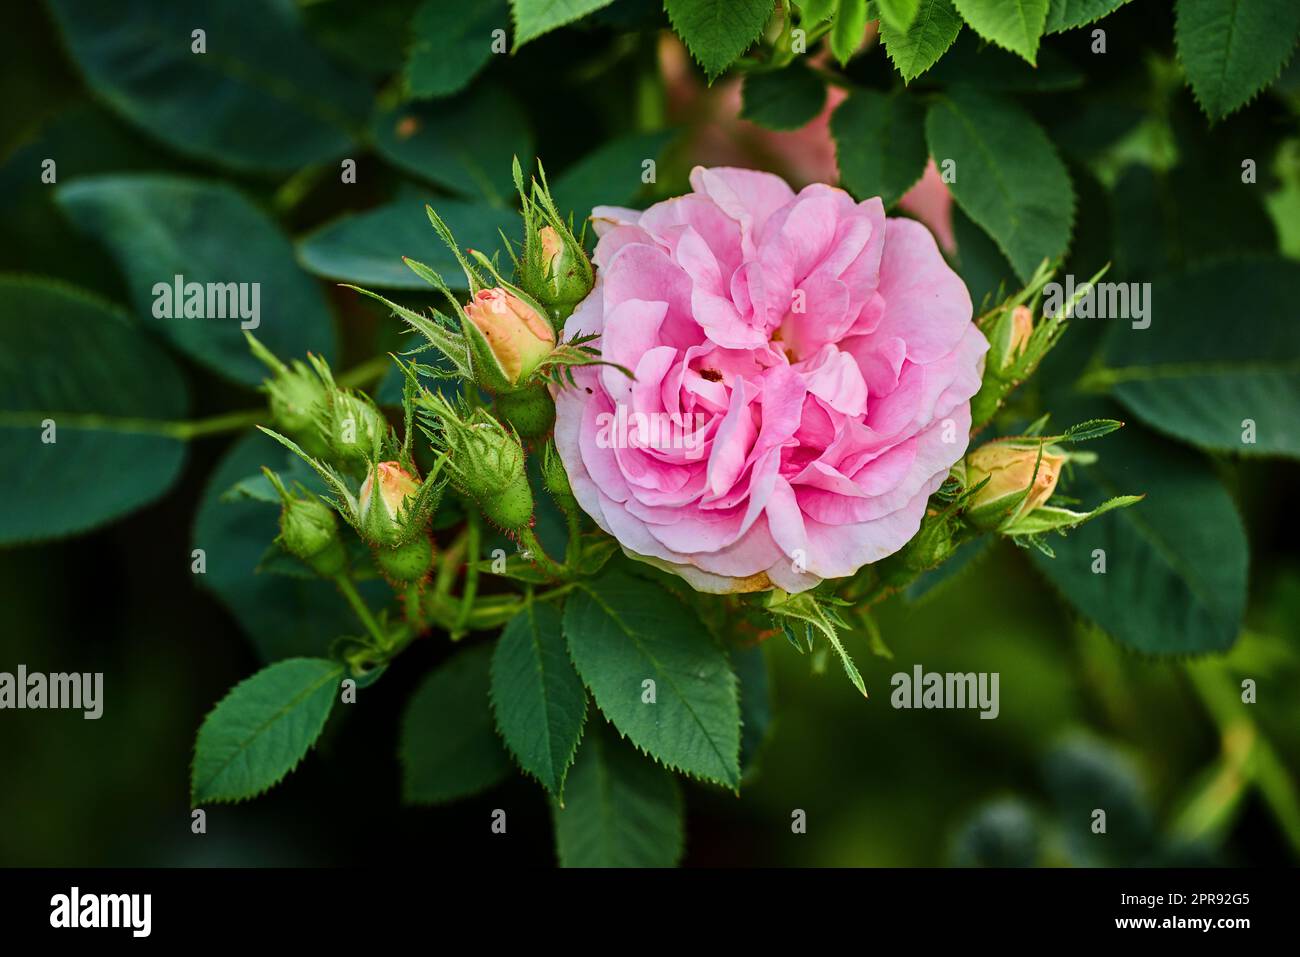 Leuchtend pinkfarbene Hunderose und Knospen an einem Baum in einem Garten. Nahaufnahme einer hübschen rosa Canina Blume, die zwischen grünen Blättern in der Natur wächst. Nahaufnahme blühender Blütenblätter und Blütenblüten auf Blumenpflanze Stockfoto